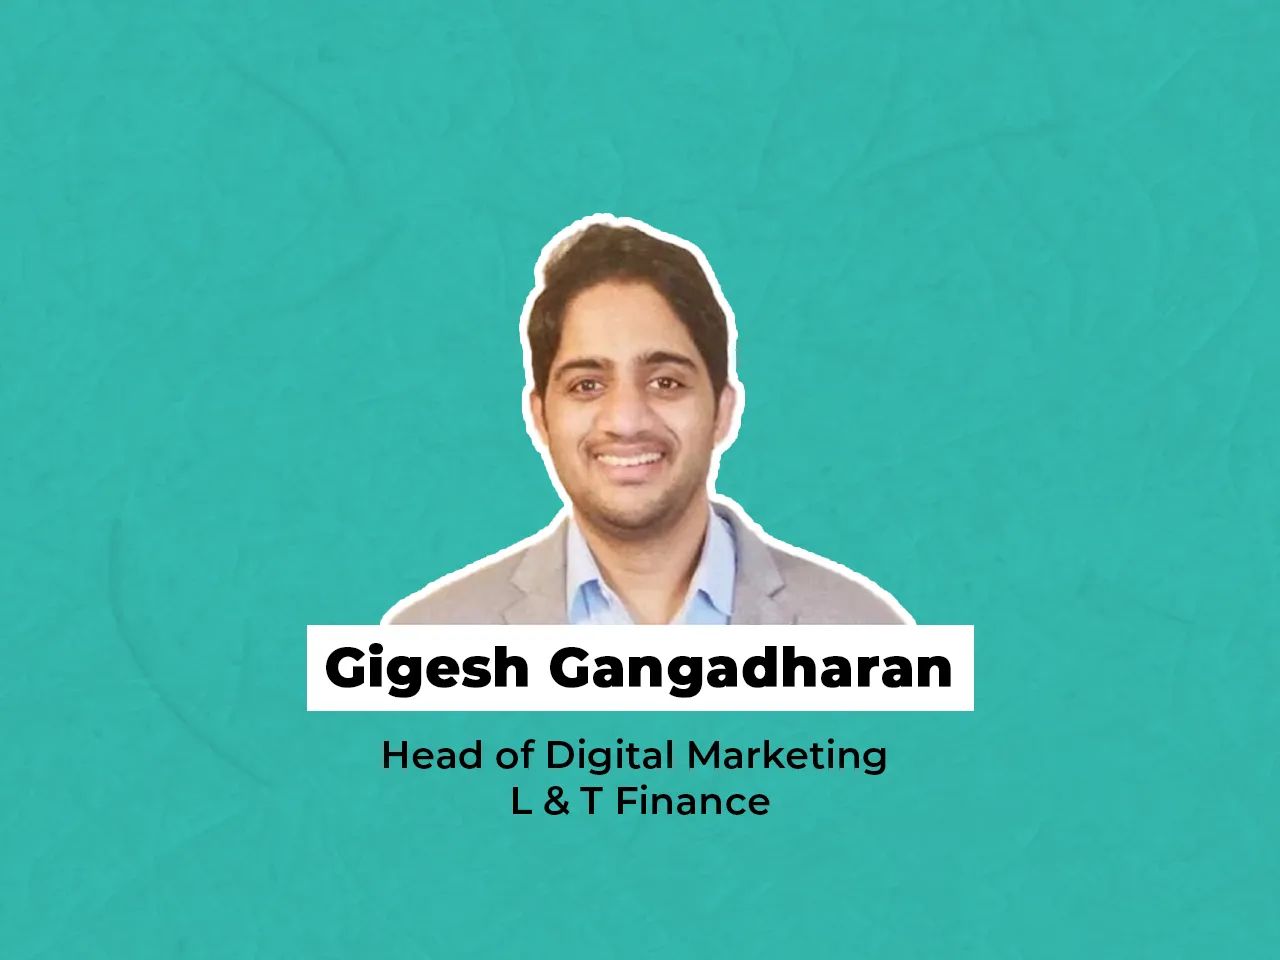 Gigesh Gangadharan